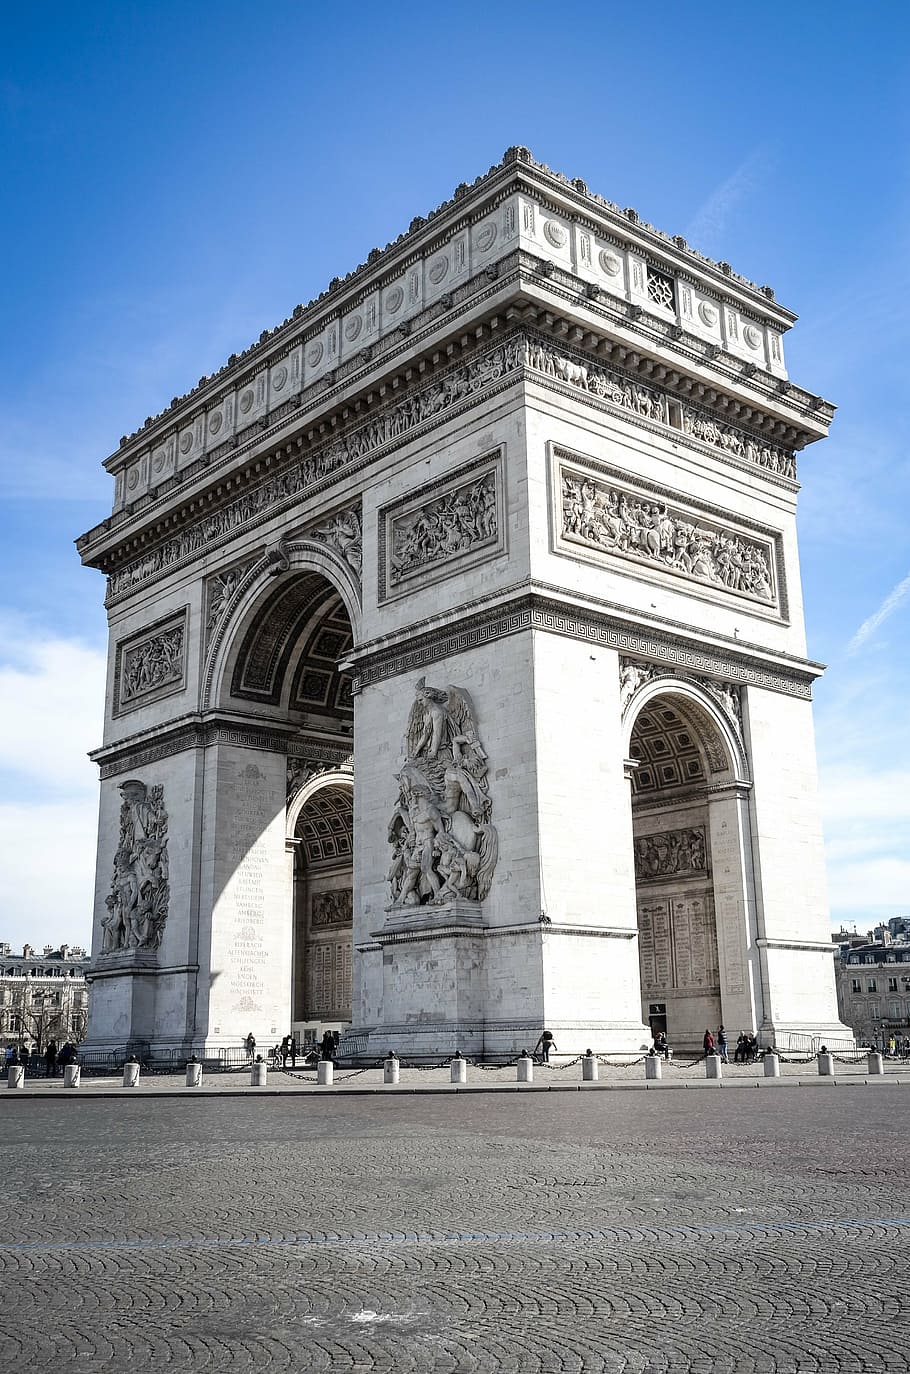 HD wallpaper: Arch de Triomphe, paris, france, places of interest